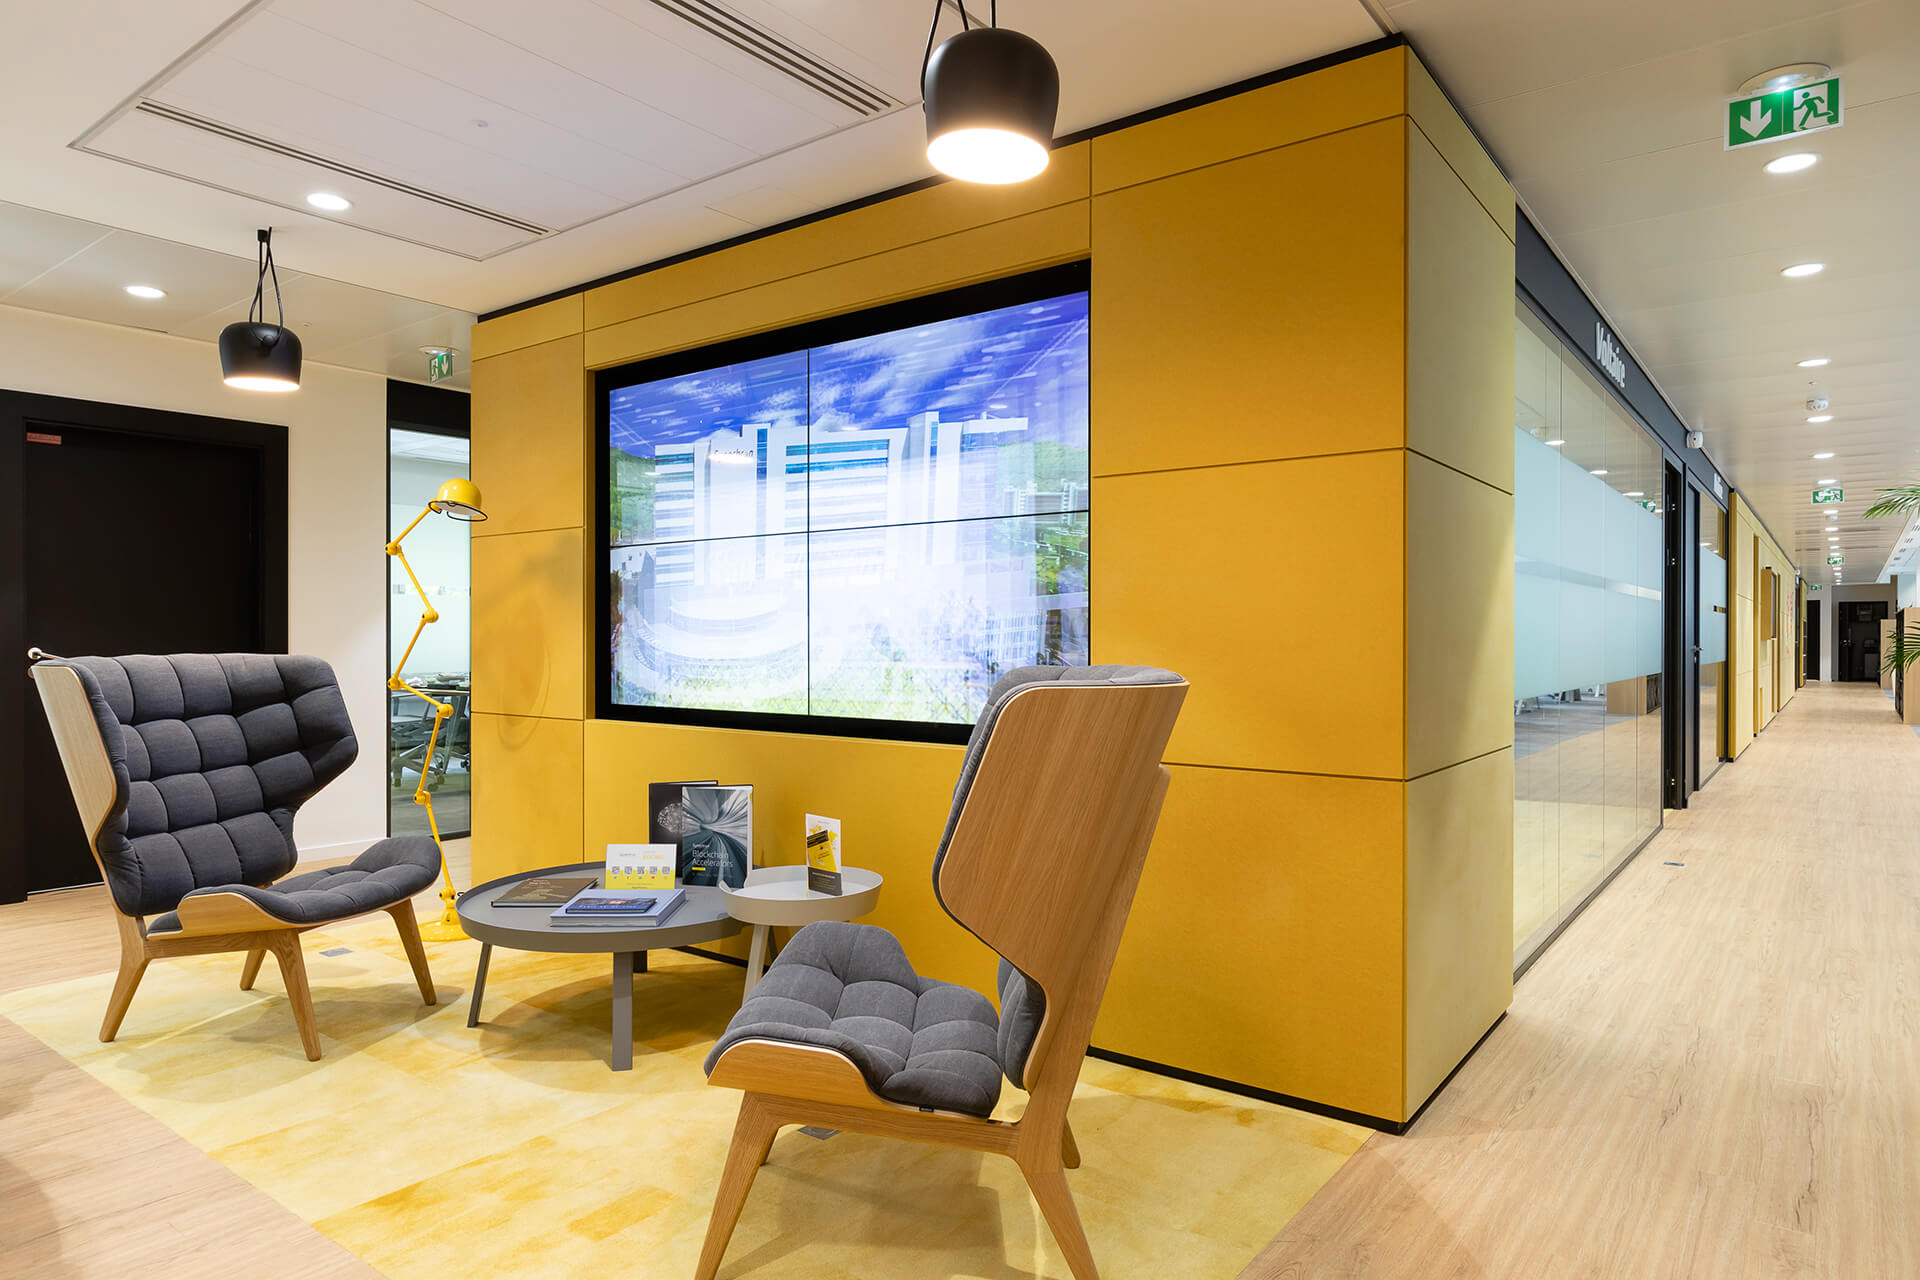 mobiliário de sala moderno cinzento e amarelo